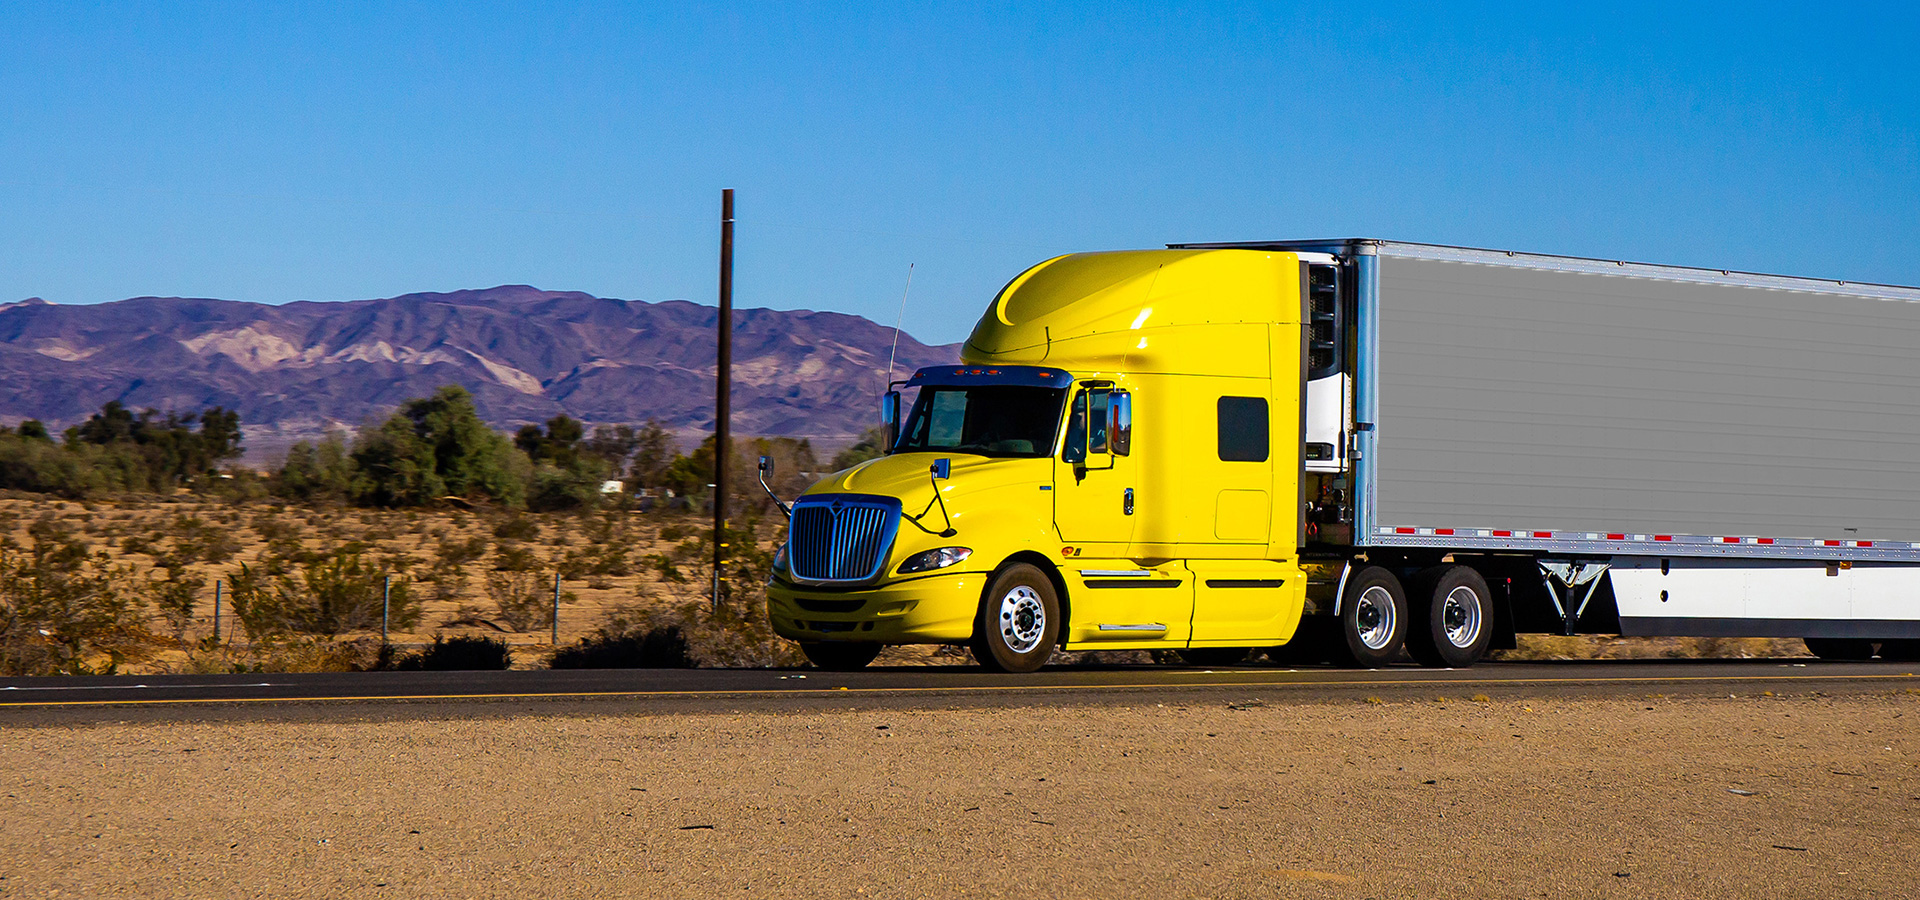 Camión semi amarillo que se dirige hacia la cámara en una carretera en Nevada